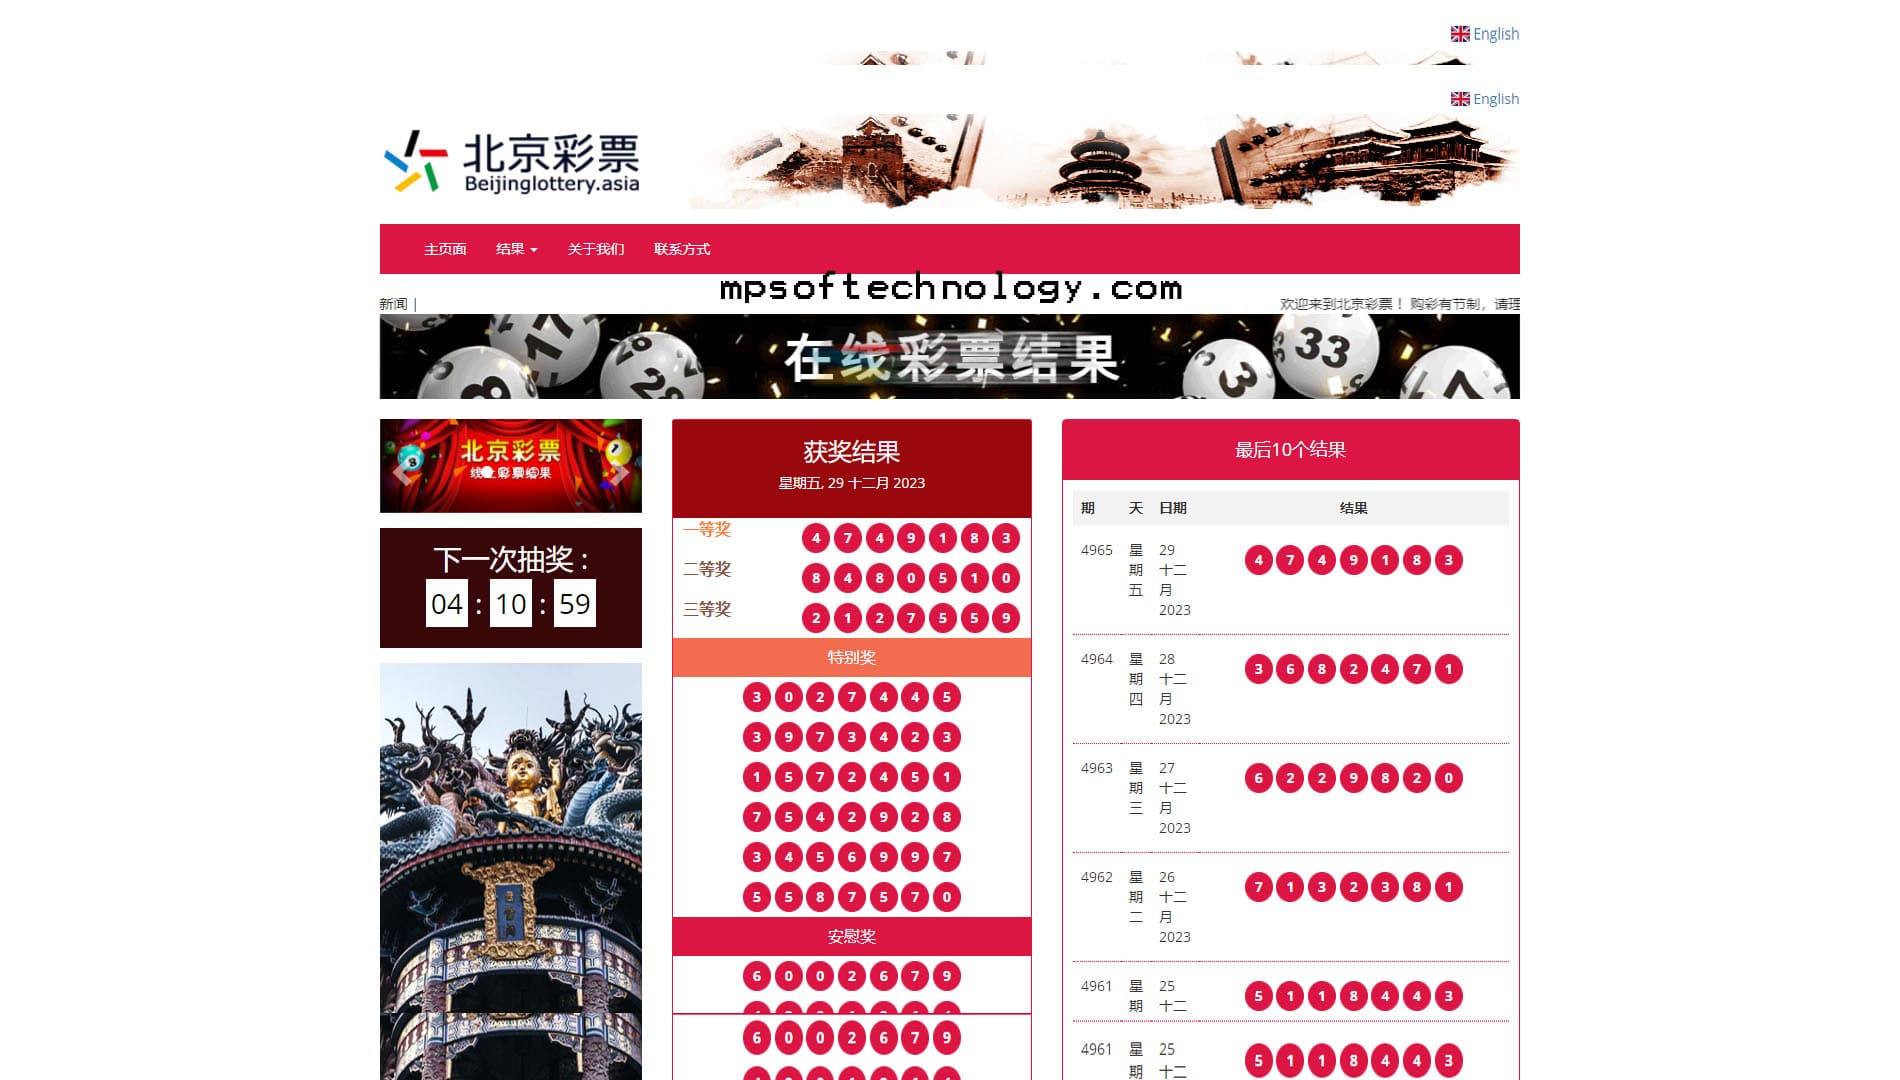 Beijing Lottery